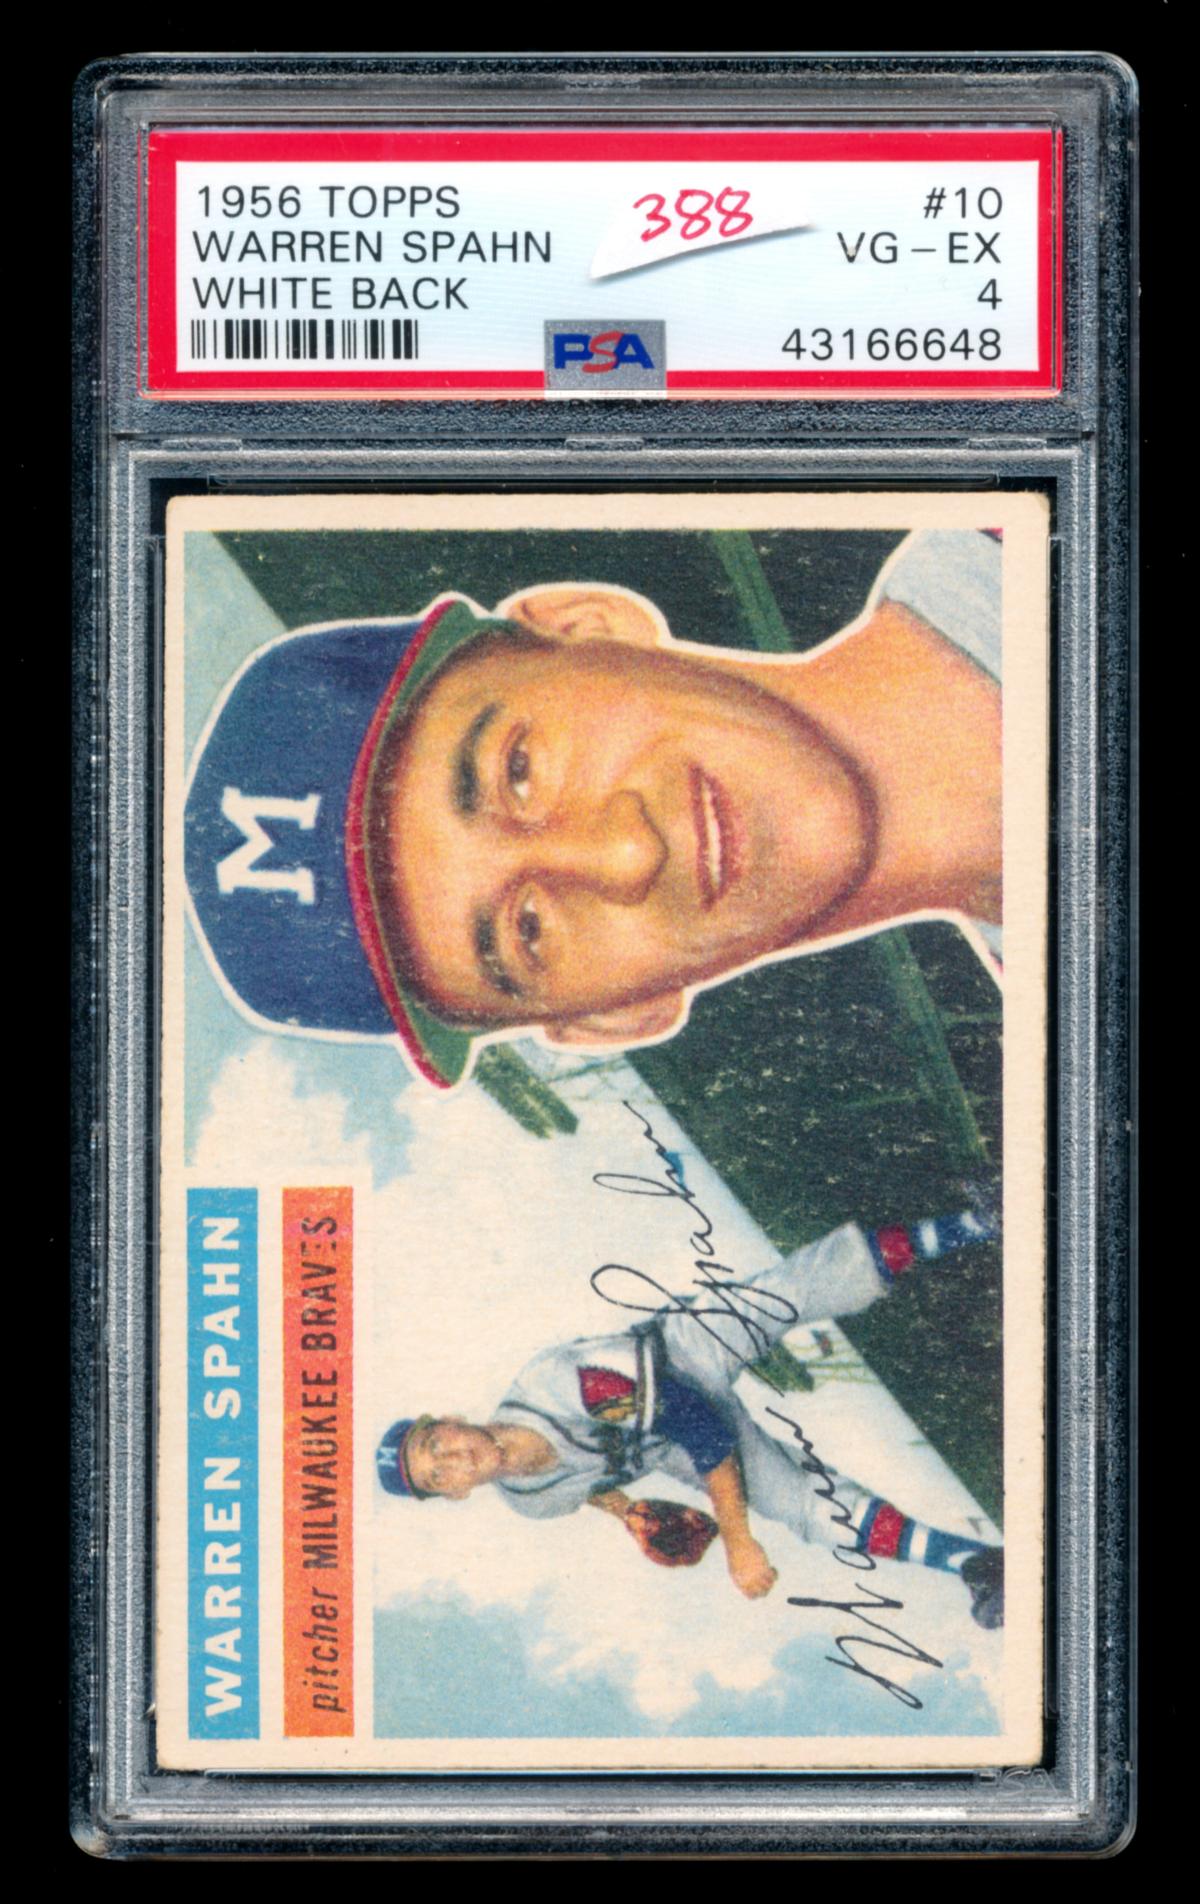 1956 Topps Baseball Card #10 Hall of Famer Warren Spahn Milwaukee Braves. C